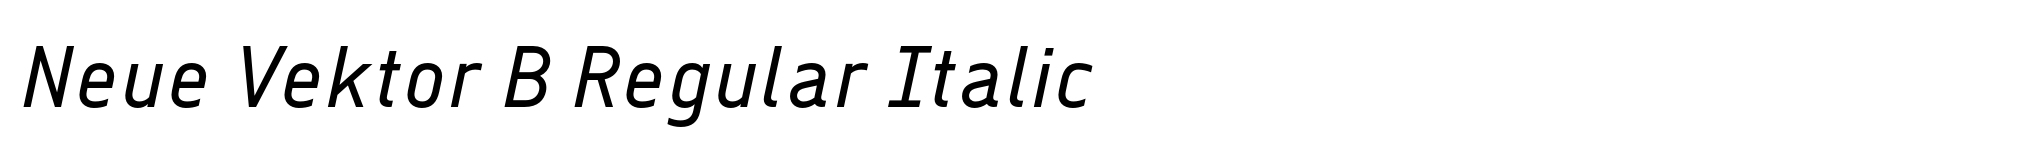 Neue Vektor B Regular Italic image